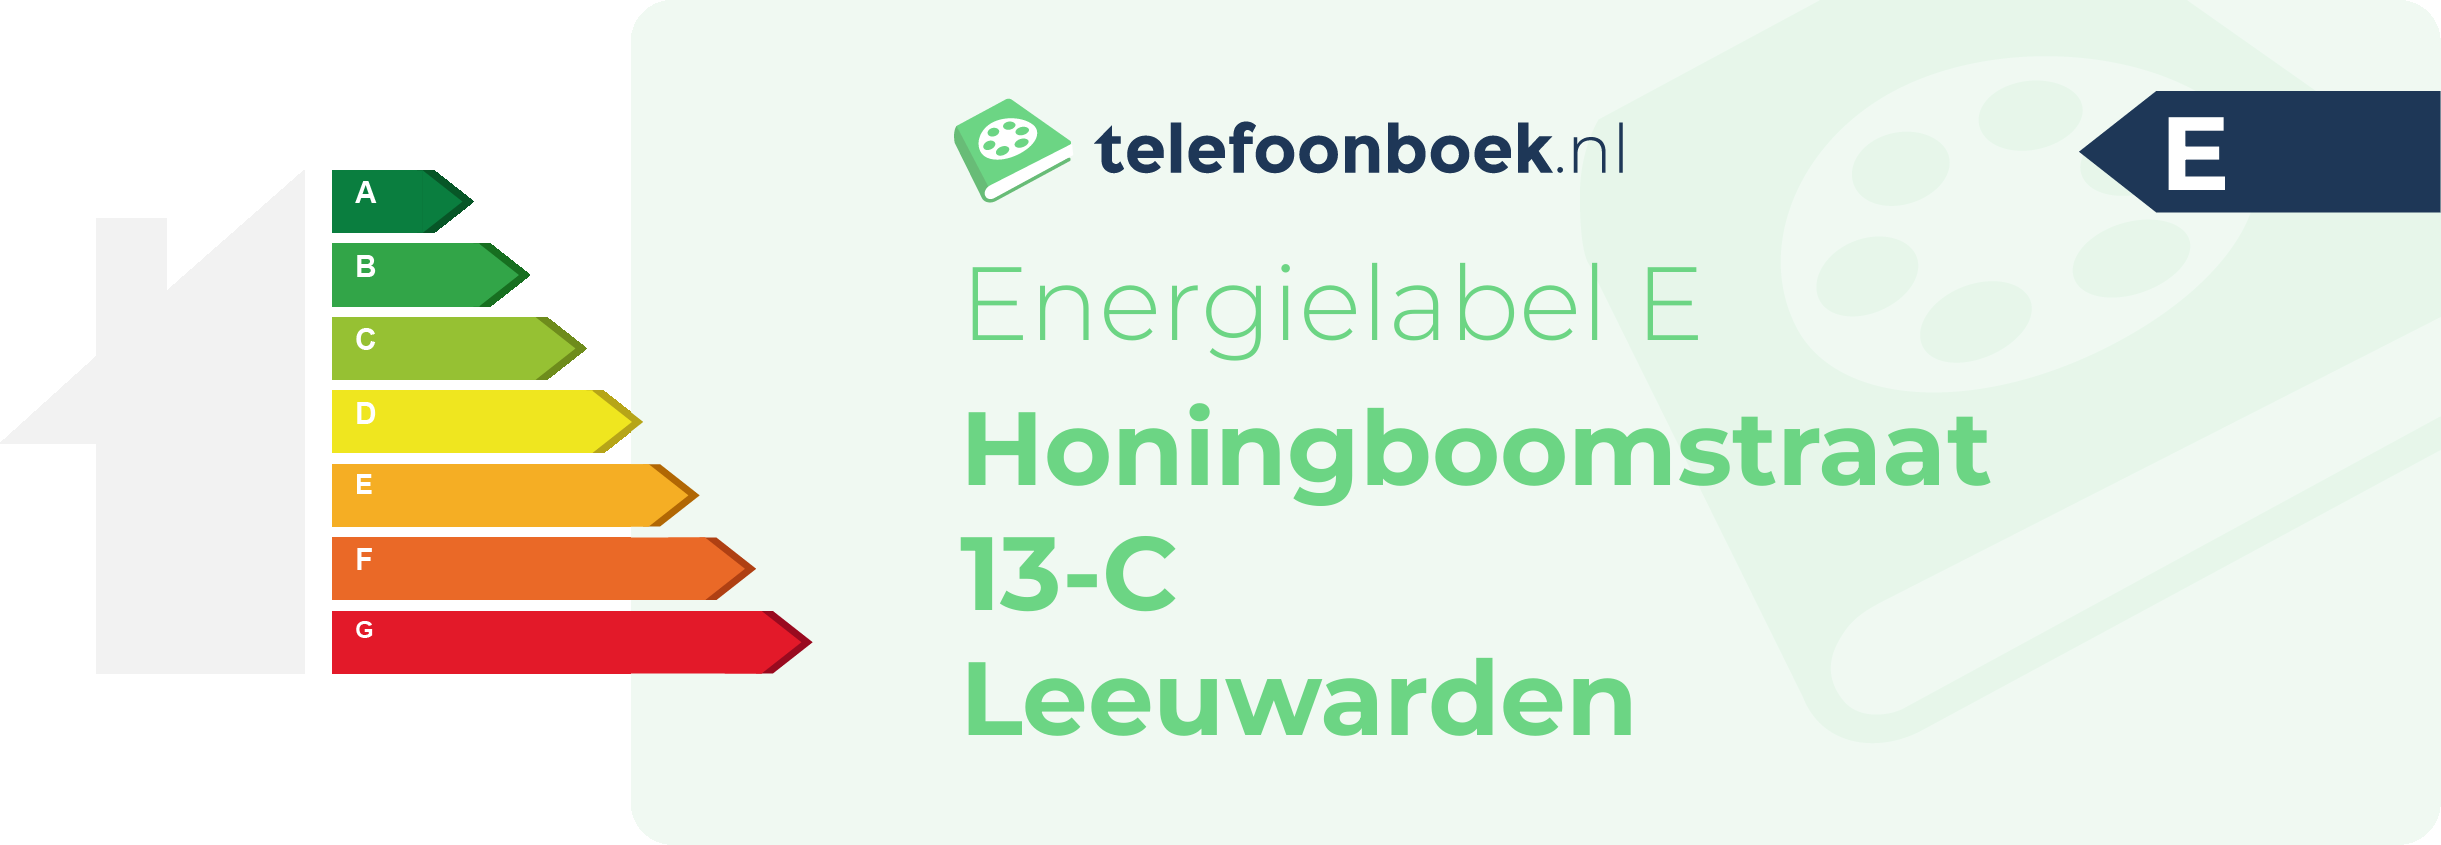 Energielabel Honingboomstraat 13-C Leeuwarden